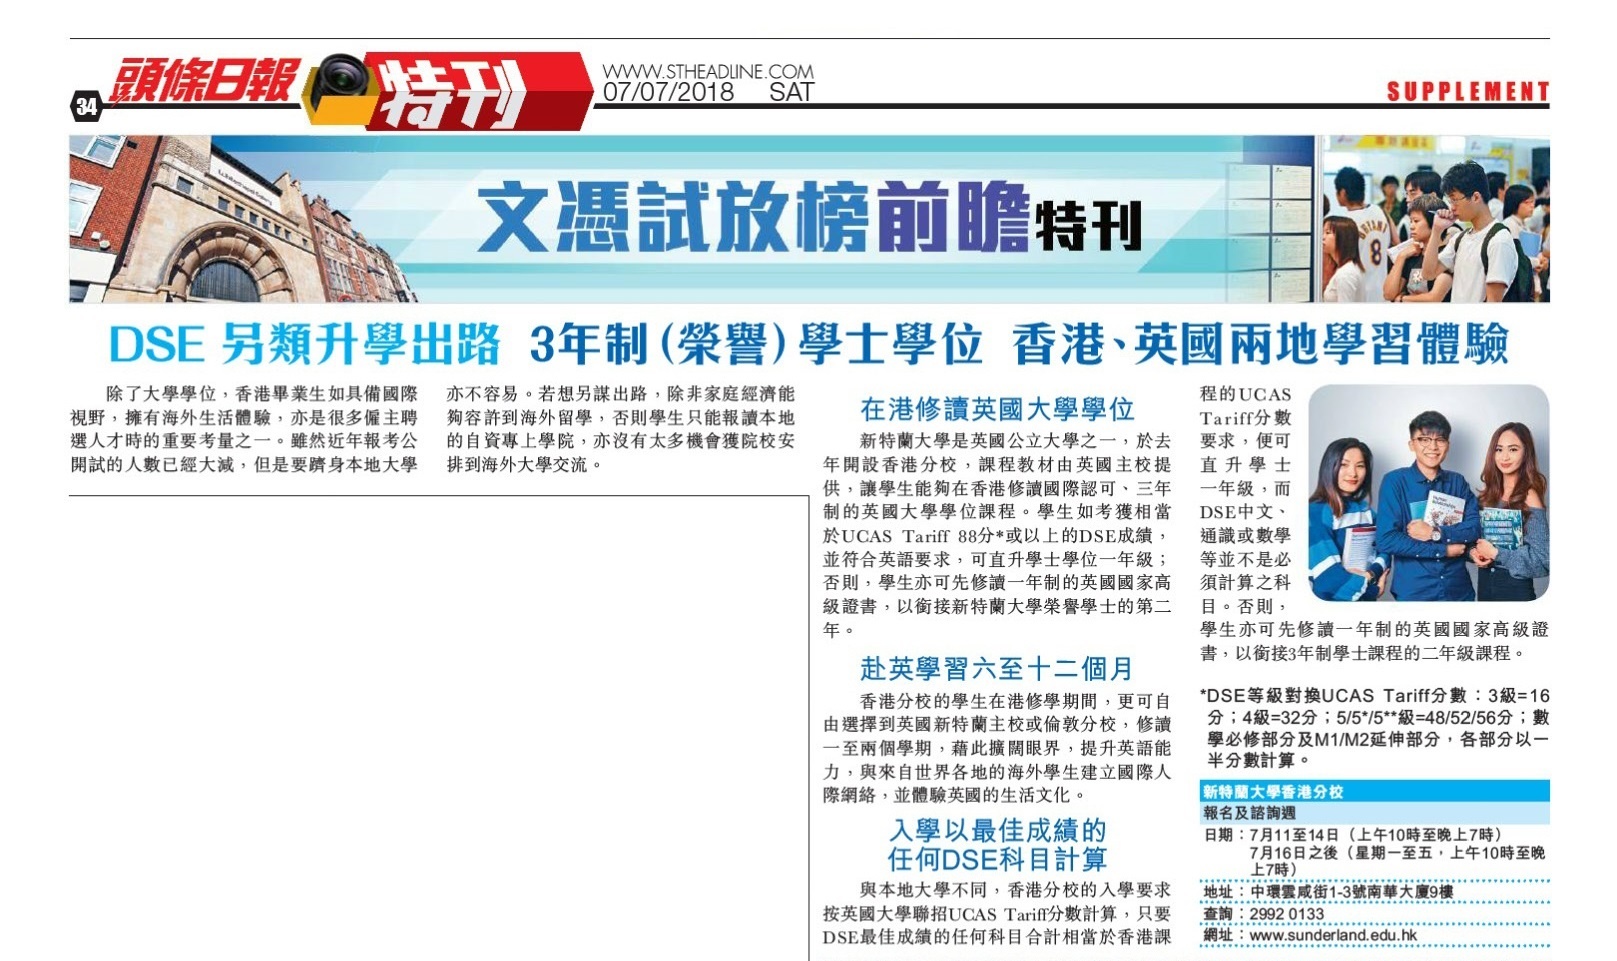 sunderland-hk-uoshk-headline-daily-180707